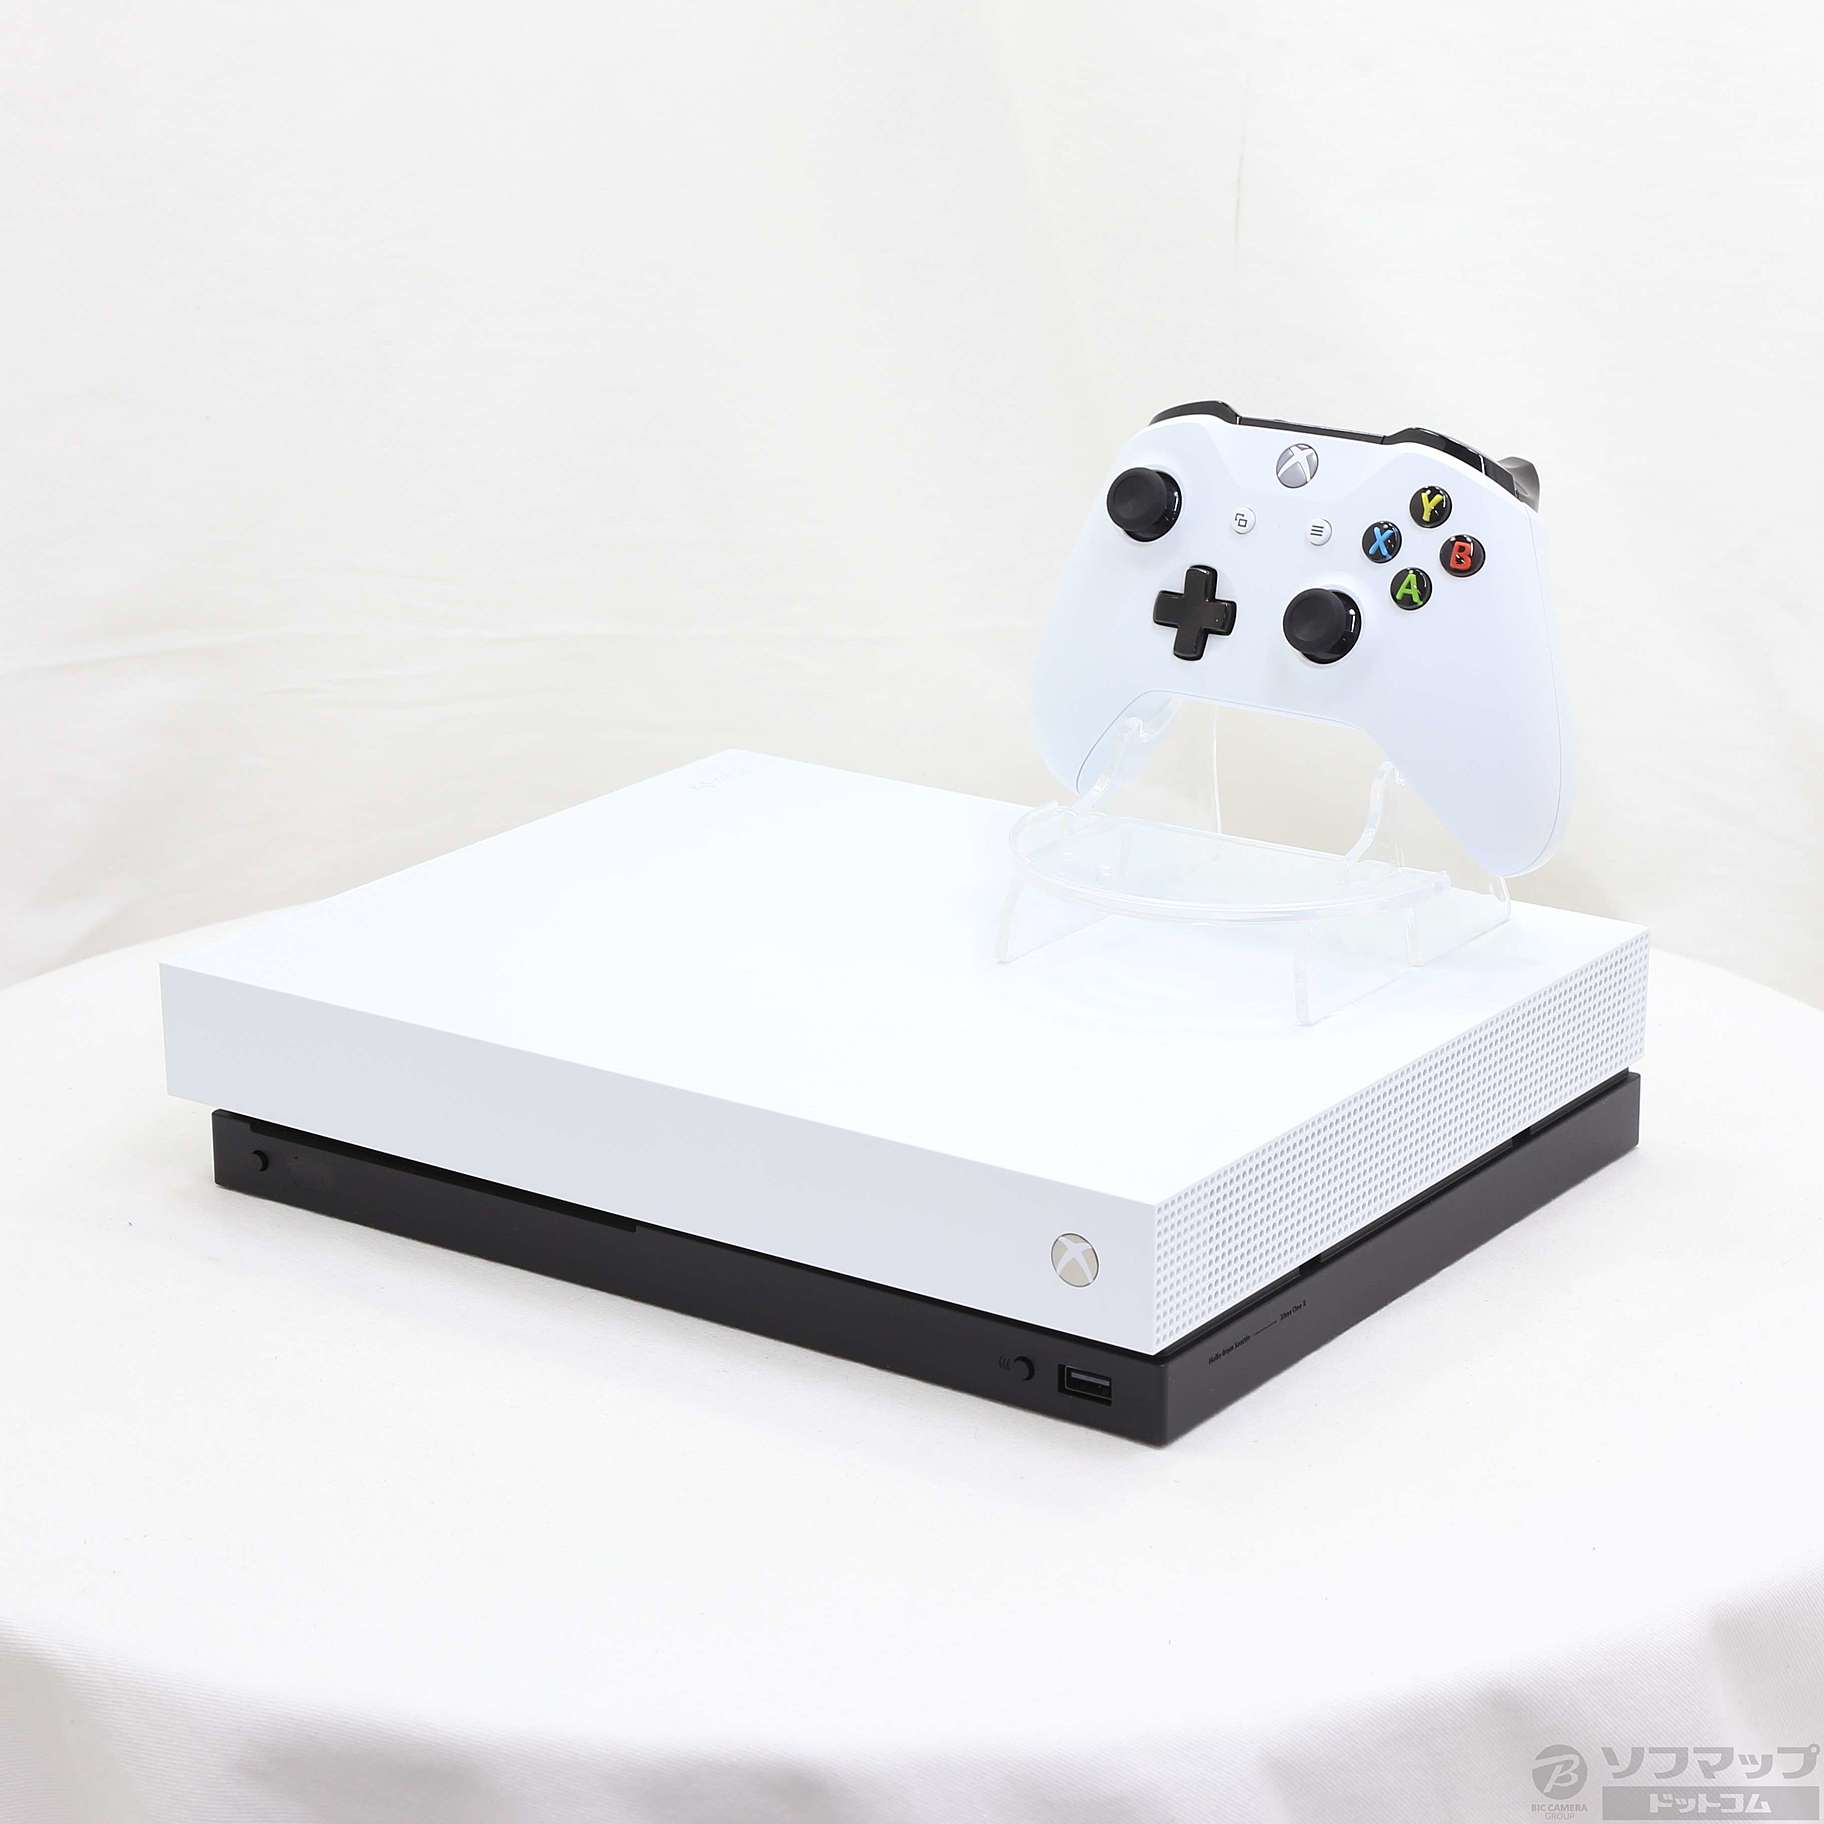 Xbox One X ホワイト スペシャル エディション